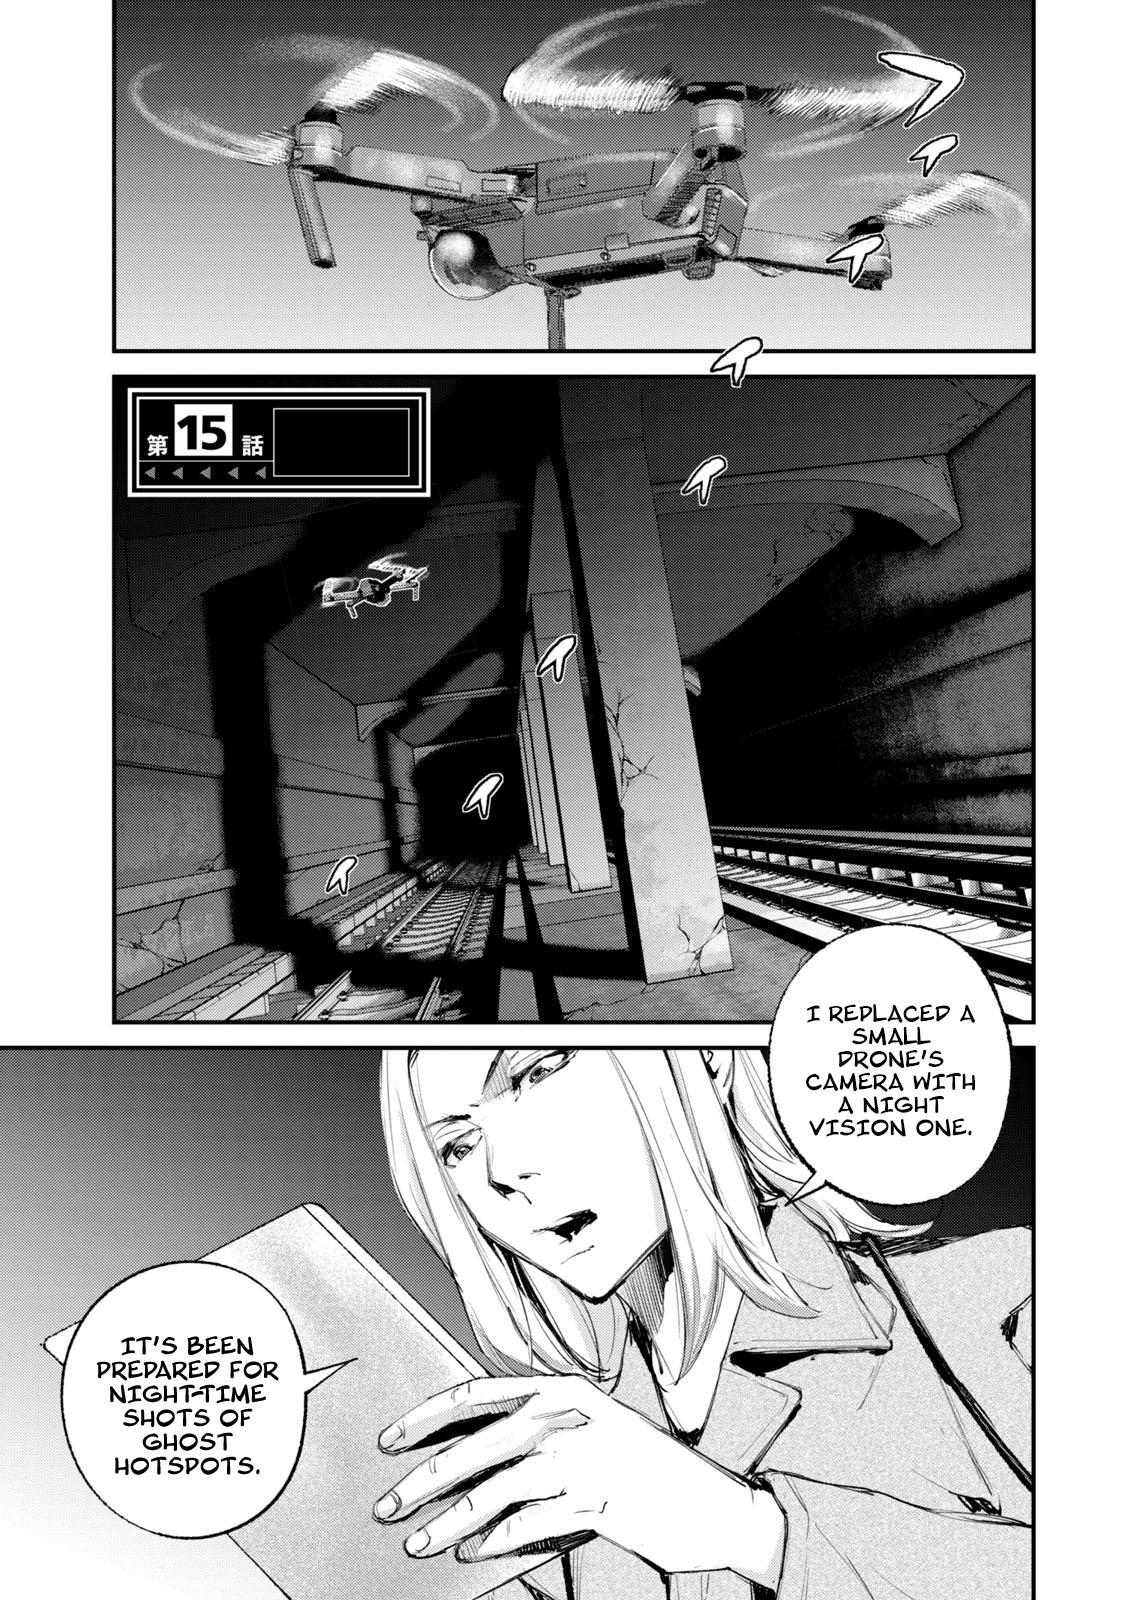 Gajuu: The Beast - Page 2